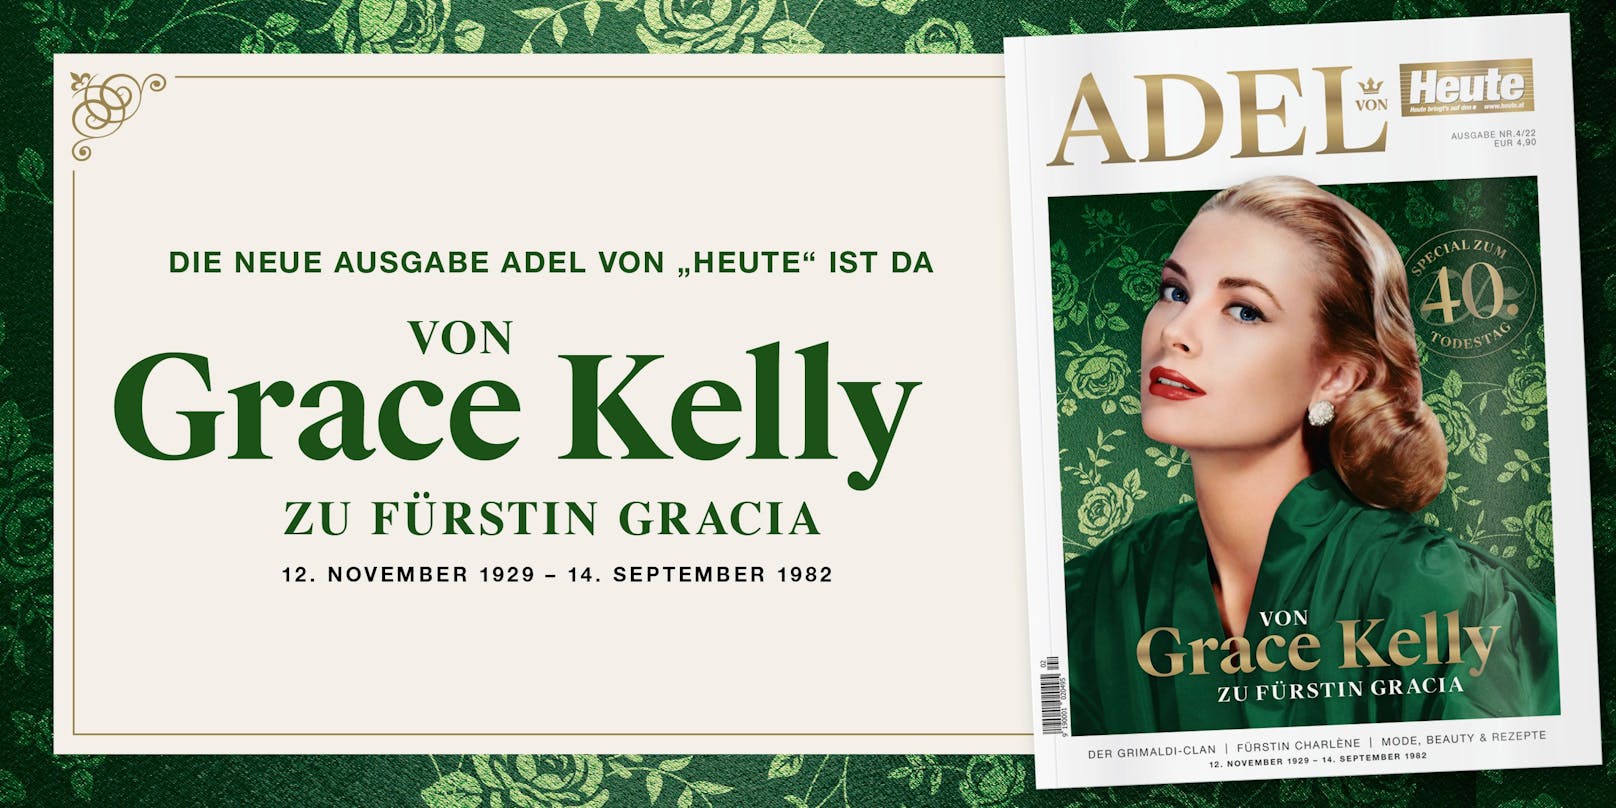 In der neuen Ausgabe des "ADEL"-Magazins gibt es nicht nur jede Menge interessanter Informationen zu Grace Kelly, sondern ebenso ein Gewinnspiel mit welchem du jede Menge tolle Preise gewinnen kannst.